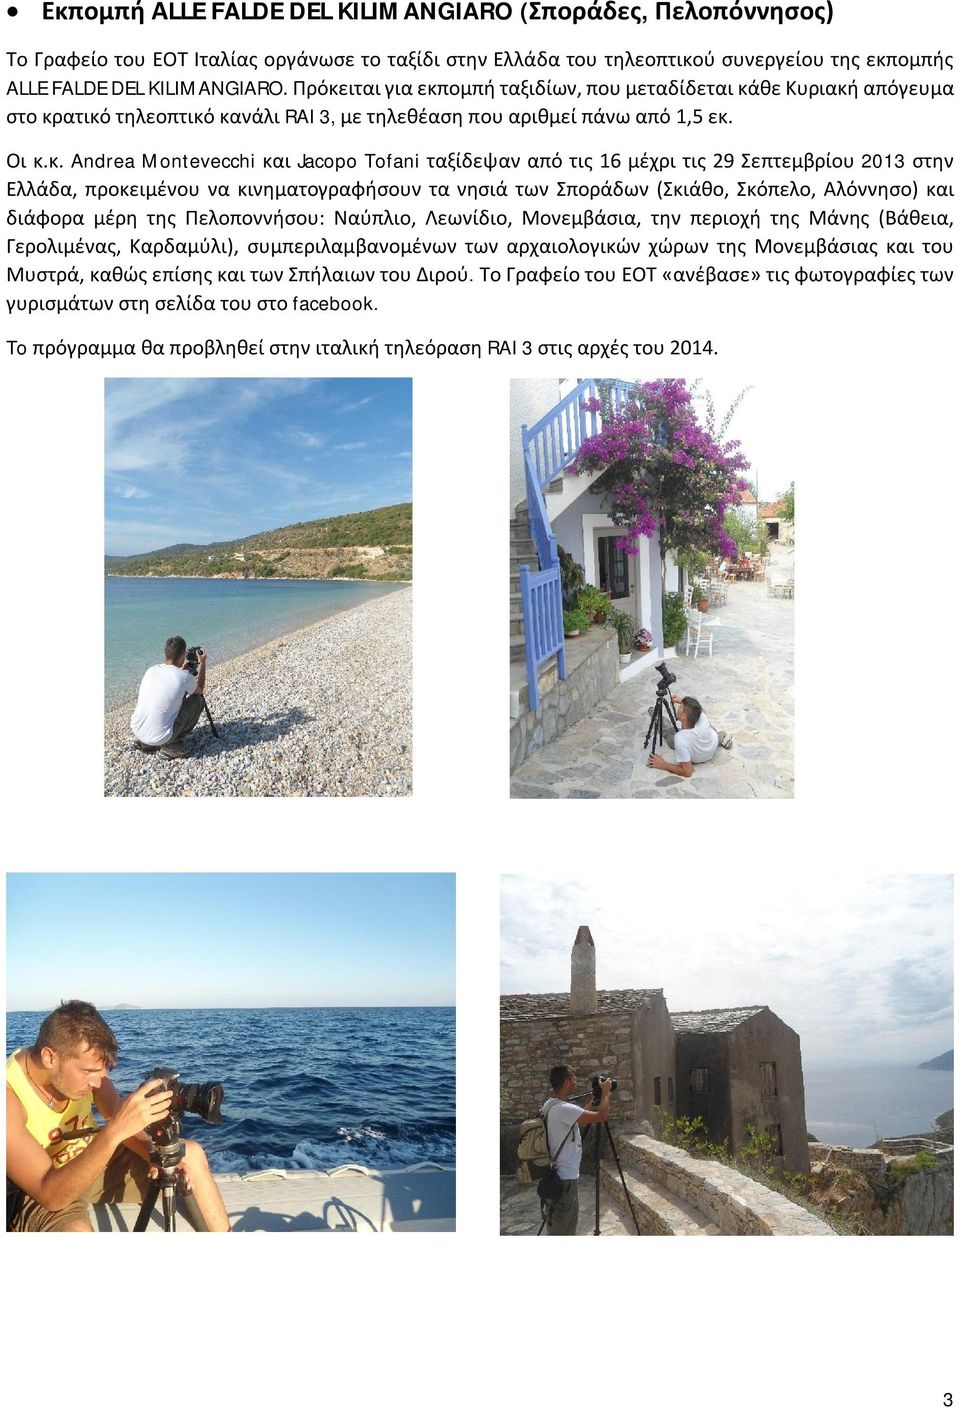 ταξίδεψαν από τις 16 μέχρι τις 29 Σεπτεμβρίου 2013 στην Ελλάδα, προκειμένου να κινηματογραφήσουν τα νησιά των Σποράδων (Σκιάθο, Σκόπελο, Αλόννησο) και διάφορα μέρη της Πελοποννήσου: Ναύπλιο,